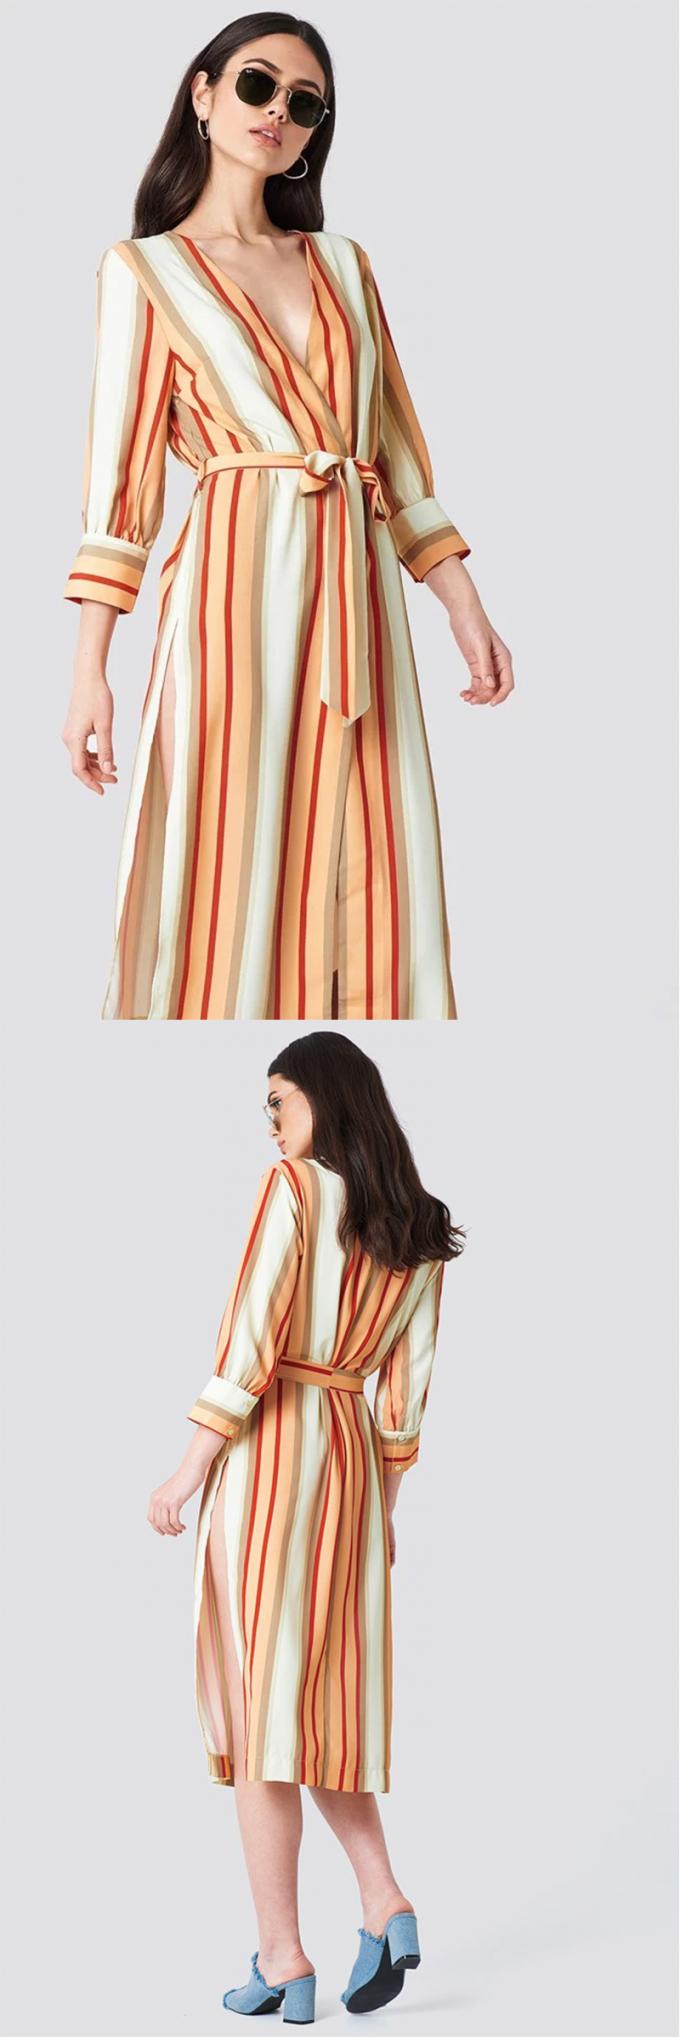 2018 Striped Kimono Multicolor Women Autumn Dress 2